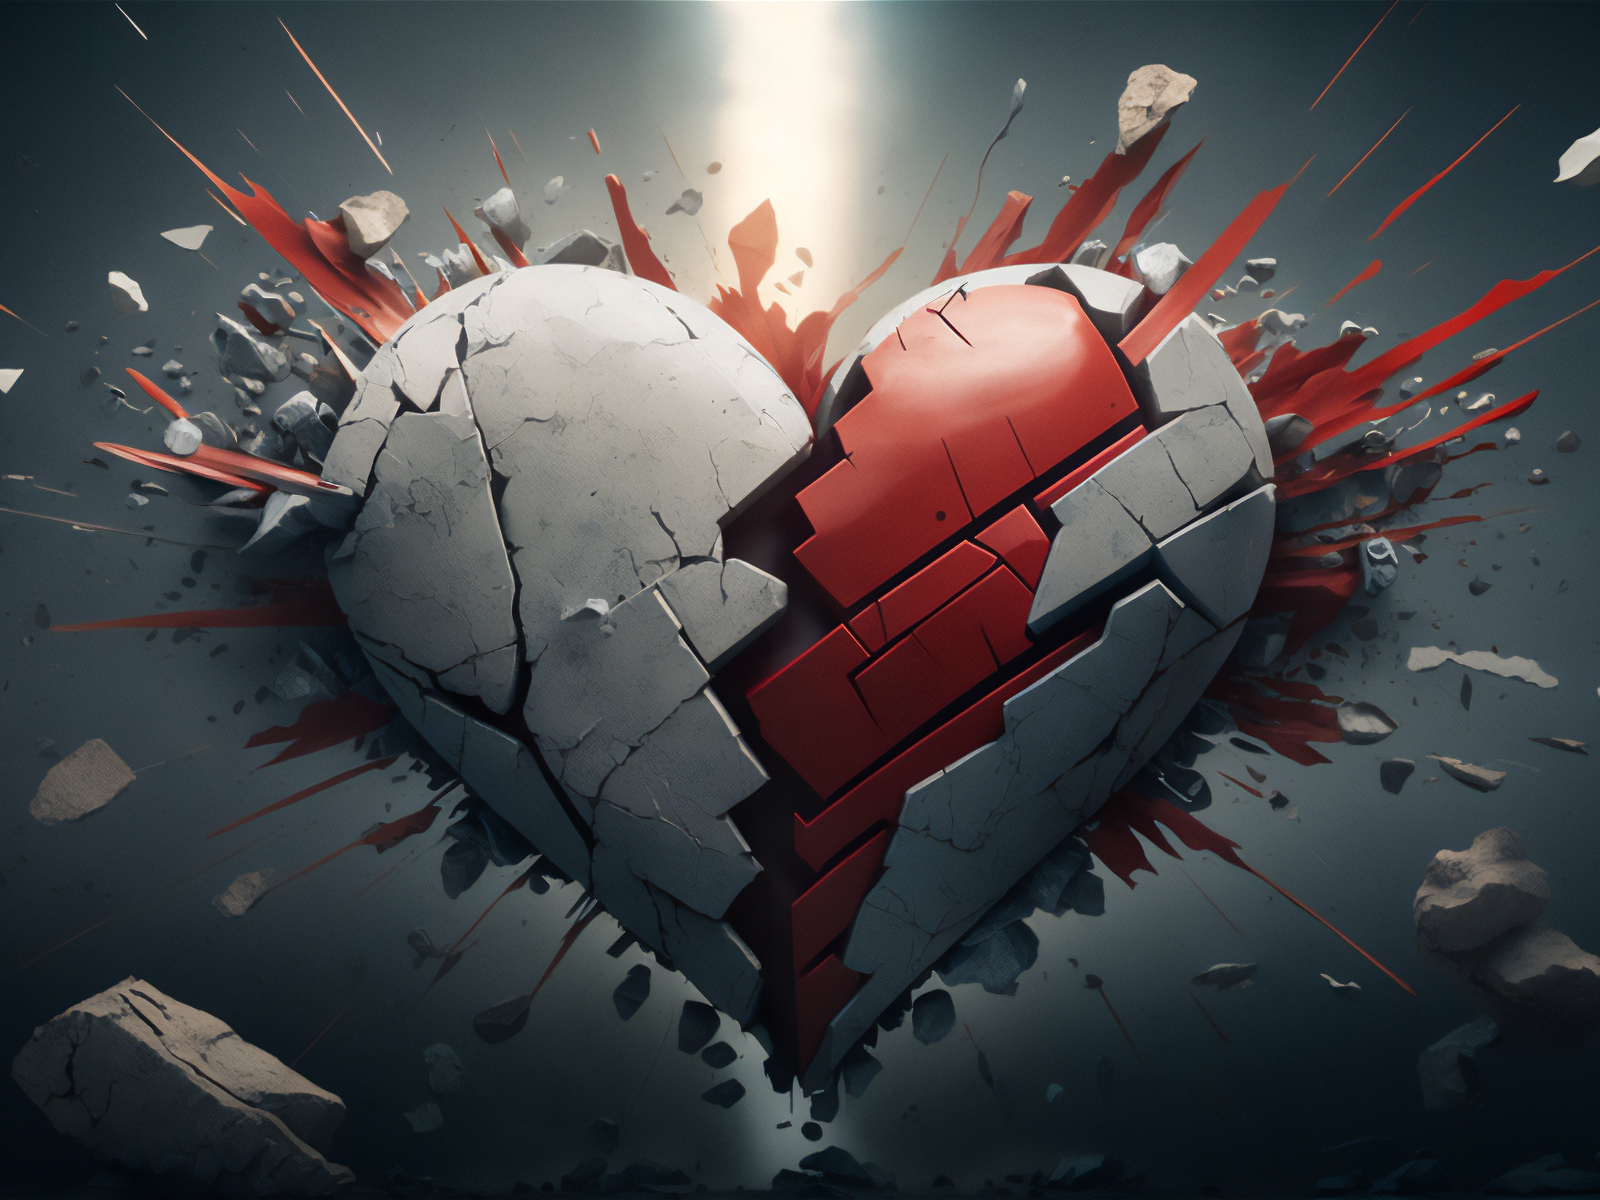 277 Heart Broken 3d Wallpaper Images, Stock Photos & Vectors | Shutterstock